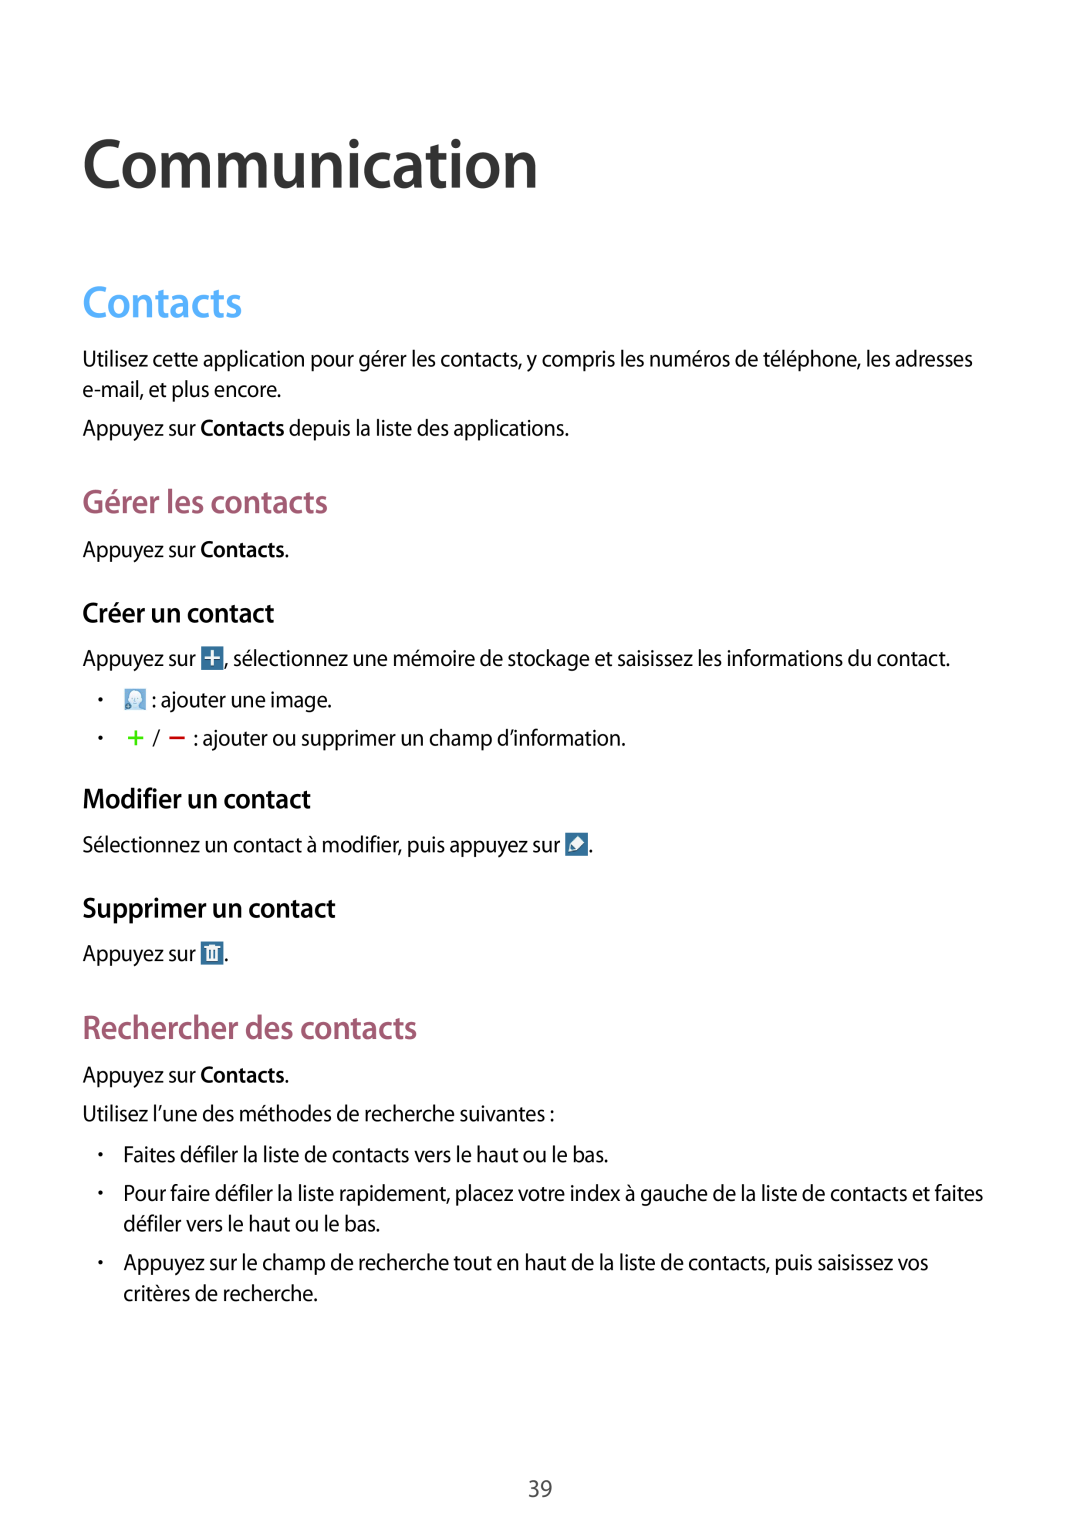 Samsung SM-T533NYKAXEF manual Communication, Contacts, Gérer les contacts, Rechercher des contacts, Créer un contact 